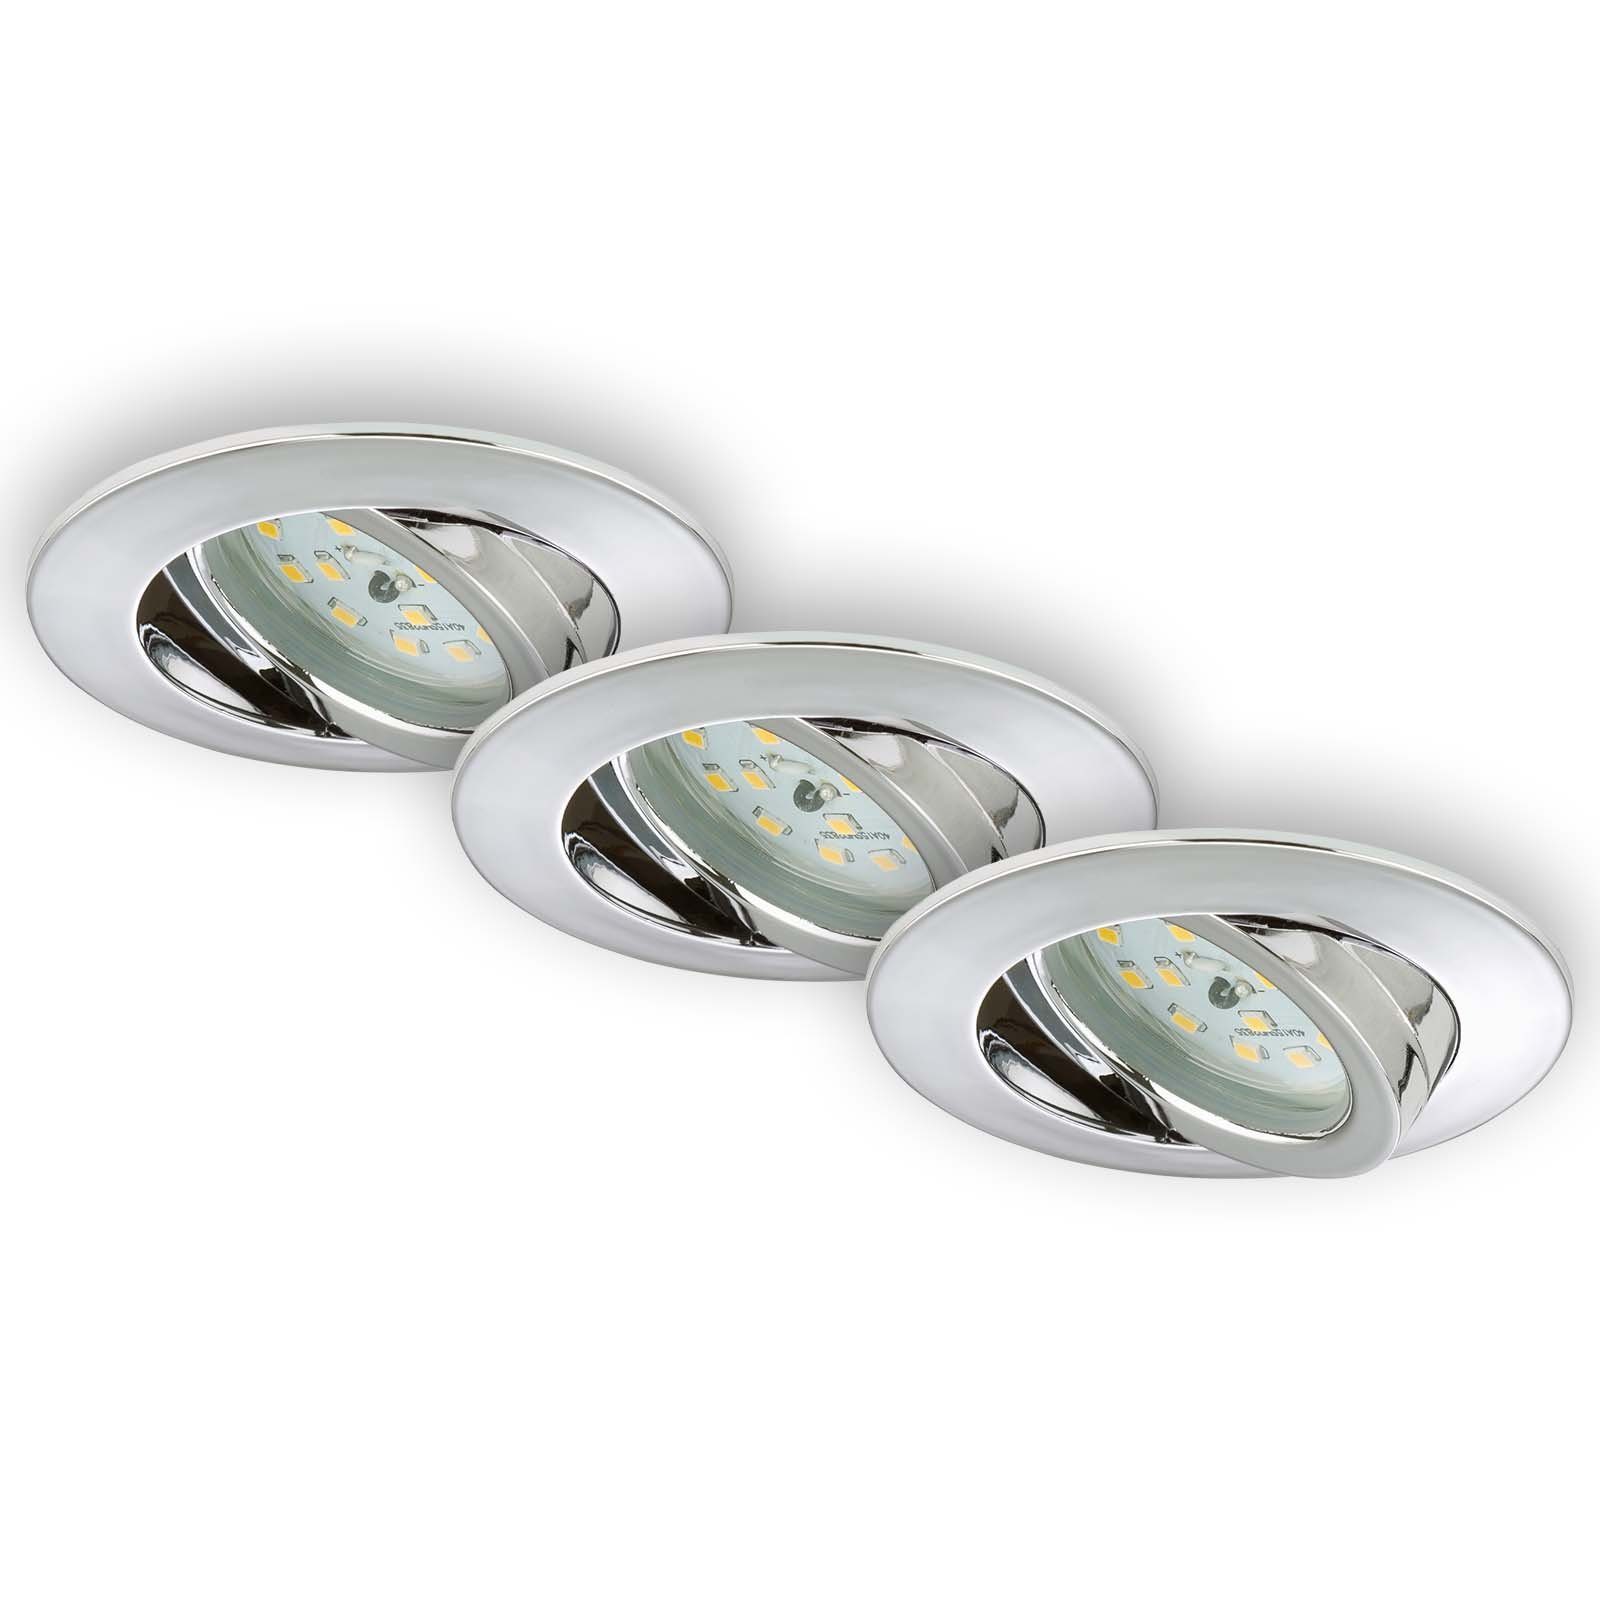 Briloner Leuchten LED Einbauleuchte 7209-038, schwenkbar, ultraflach, LED fest verbaut, Warmweiß, Einbauleuchten, 82x2,8cm, Chrom, 5W, Decke, Wohnzimmer, Schlafzimmer